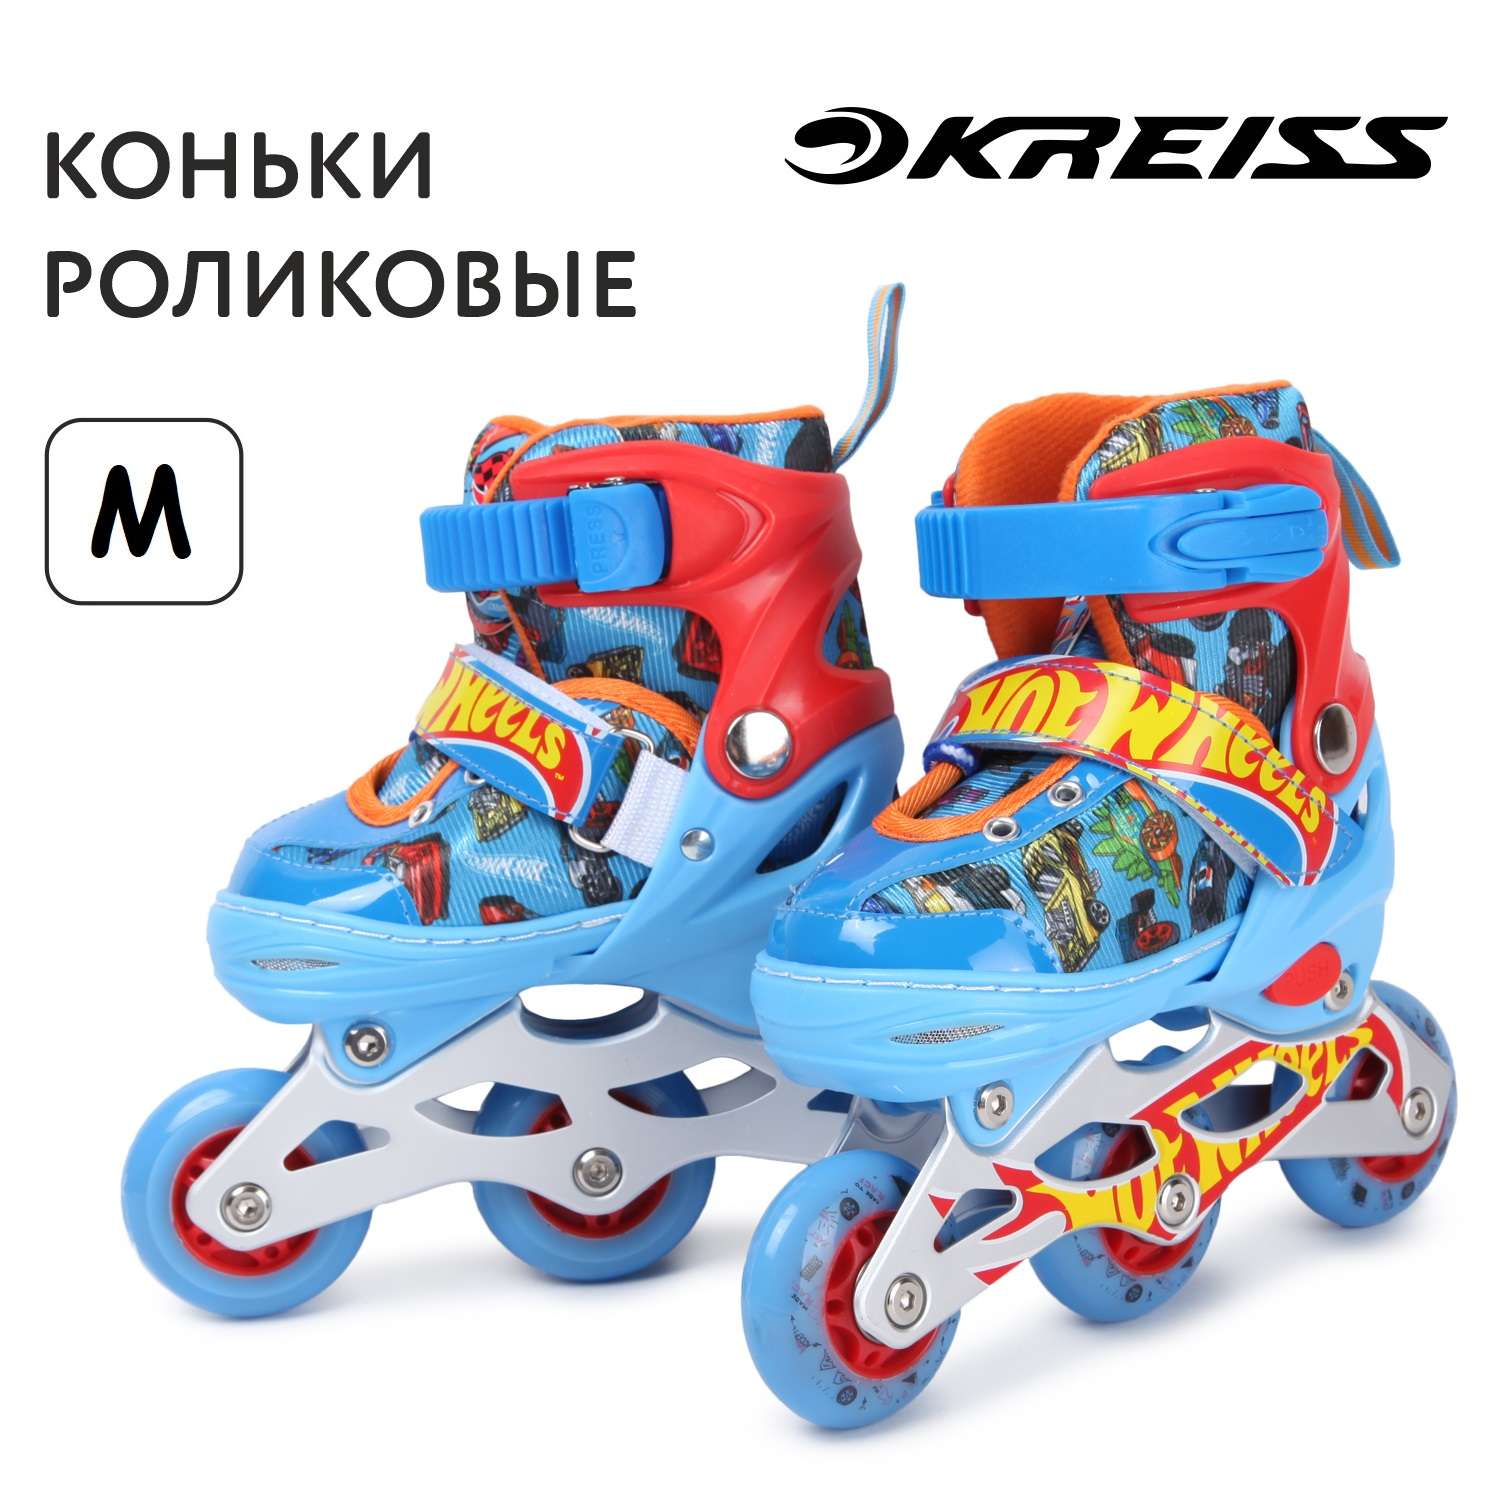 Коньки роликовые Kreiss Hot Wheels M - фото 1